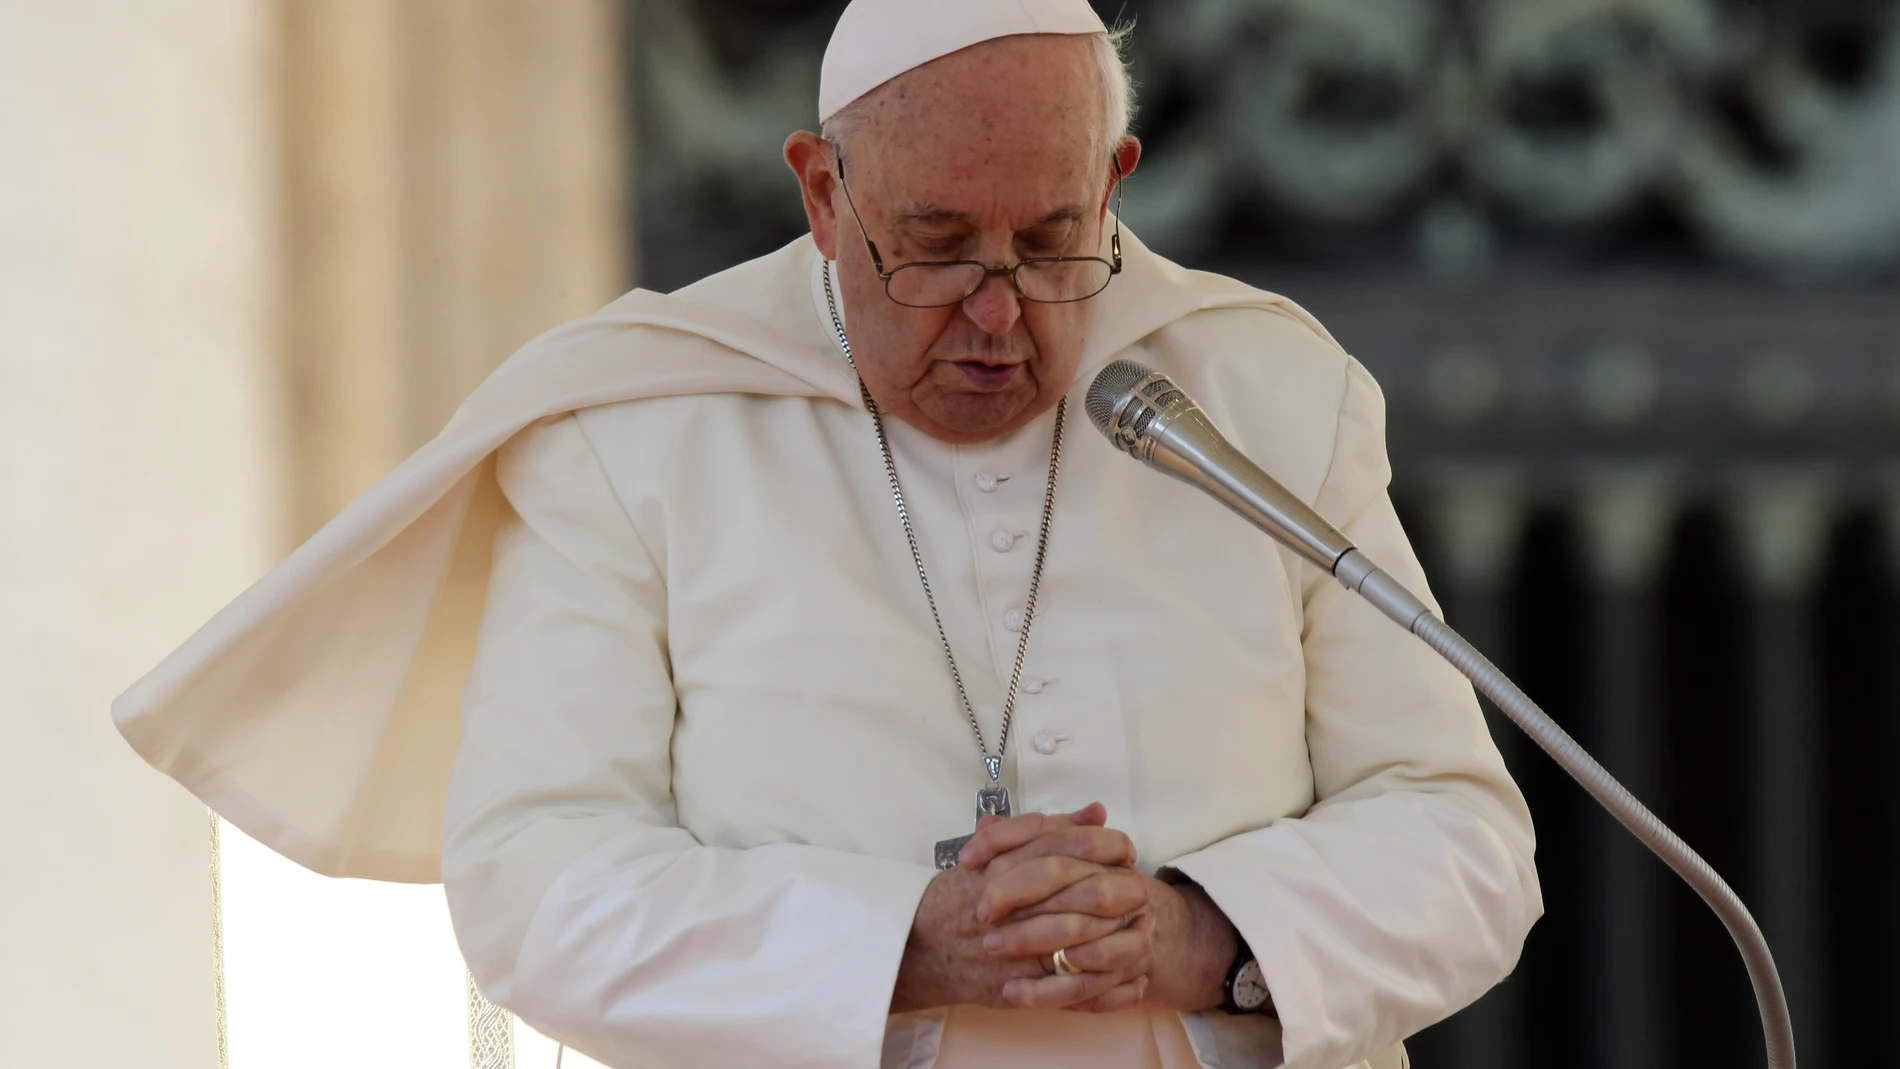 El Papa asegura que no se puede aceptar "ningún silencio ni encubrimiento" sobre los abusos